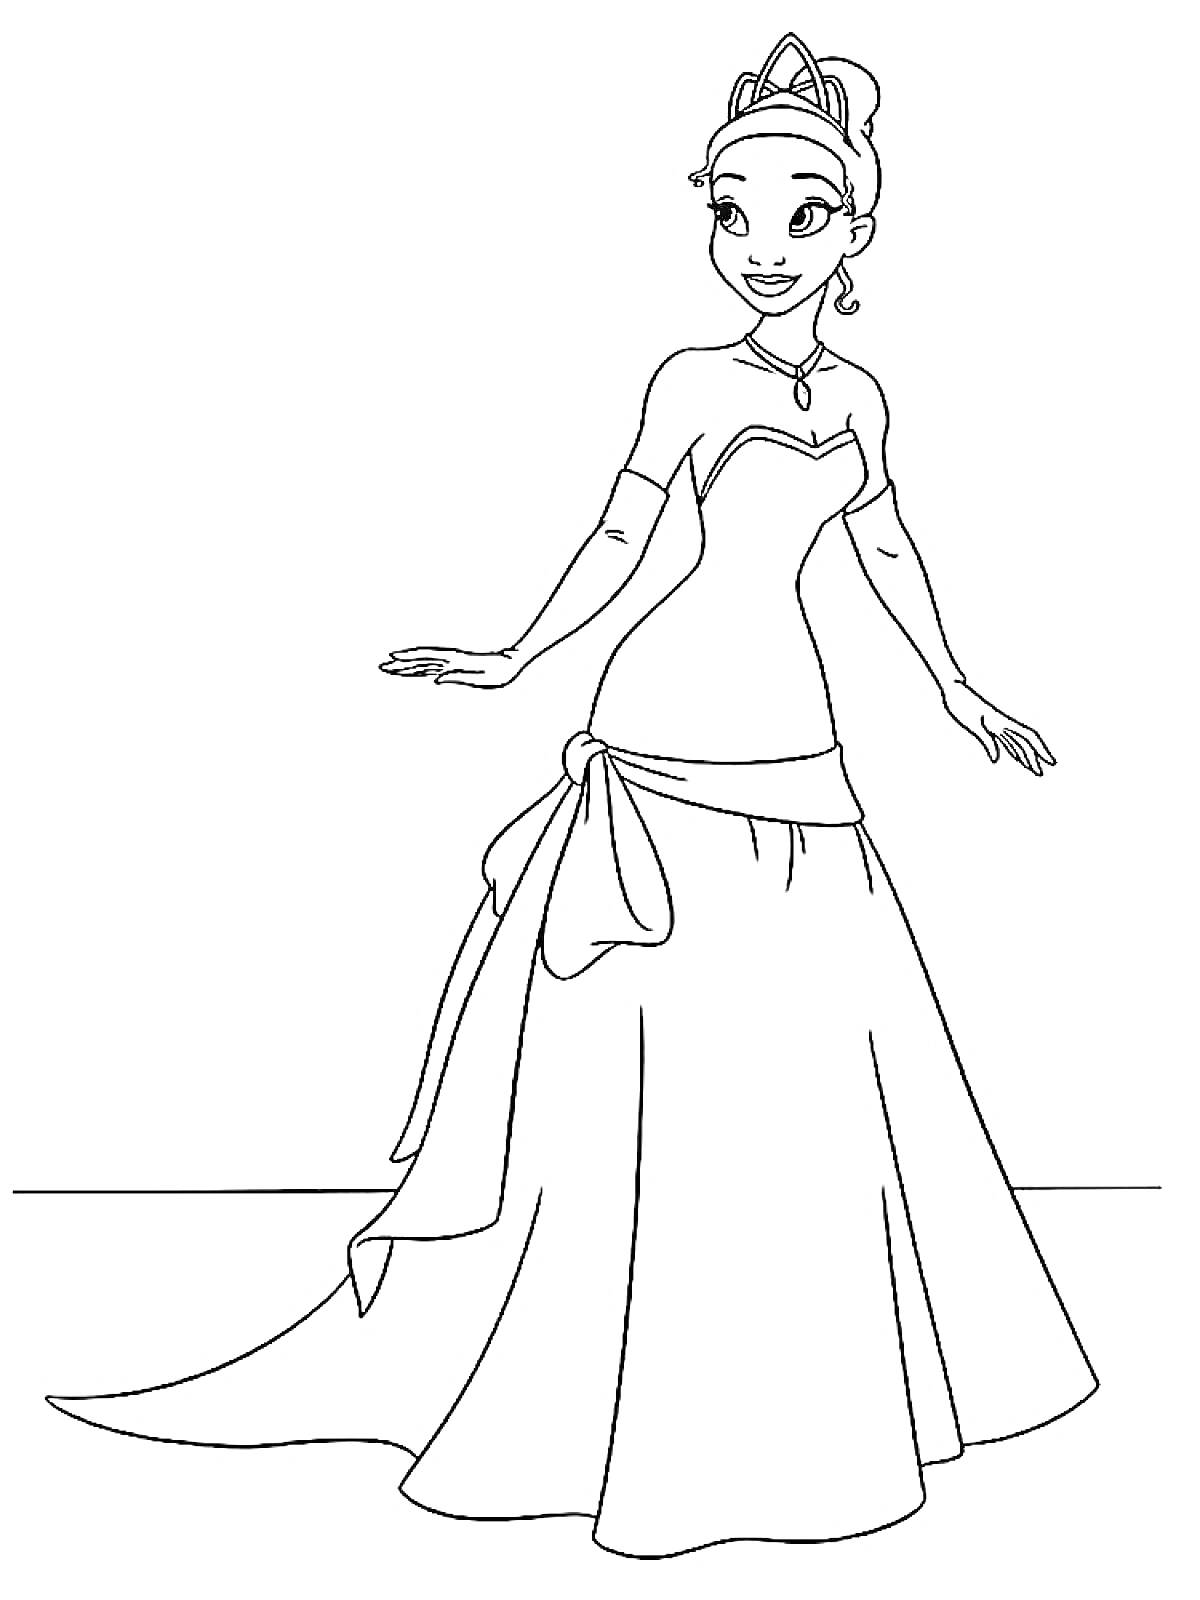 Раскраска Принцесса в длинном платье с бантом, тиарой на голове и ожерельем на шее